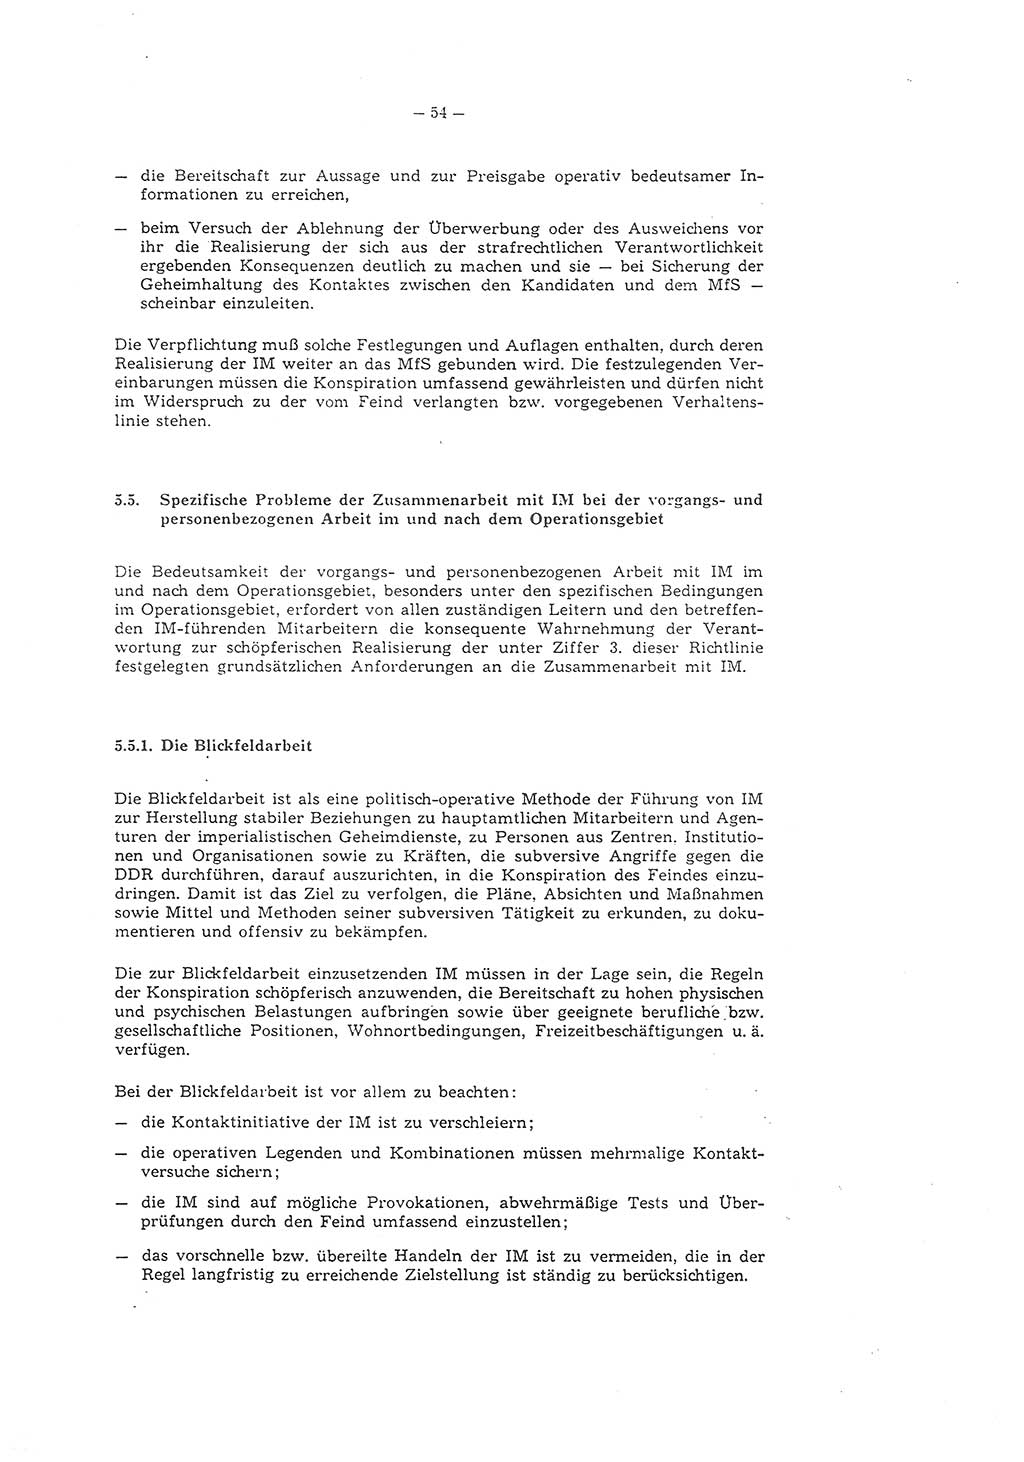 Richtlinie 1/79 für die Arbeit mit Inoffiziellen Mitarbeitern (IM) und Gesellschaftlichen Mitarbeitern für Sicherheit (GMS), Deutsche Demokratische Republik (DDR), Ministerium für Staatssicherheit (MfS), Der Minister (Mielke), Geheime Verschlußsache (GVS) ooo8-1/79, Berlin 1979, Seite 54 (RL 1/79 DDR MfS Min. GVS ooo8-1/79 1979, S. 54)